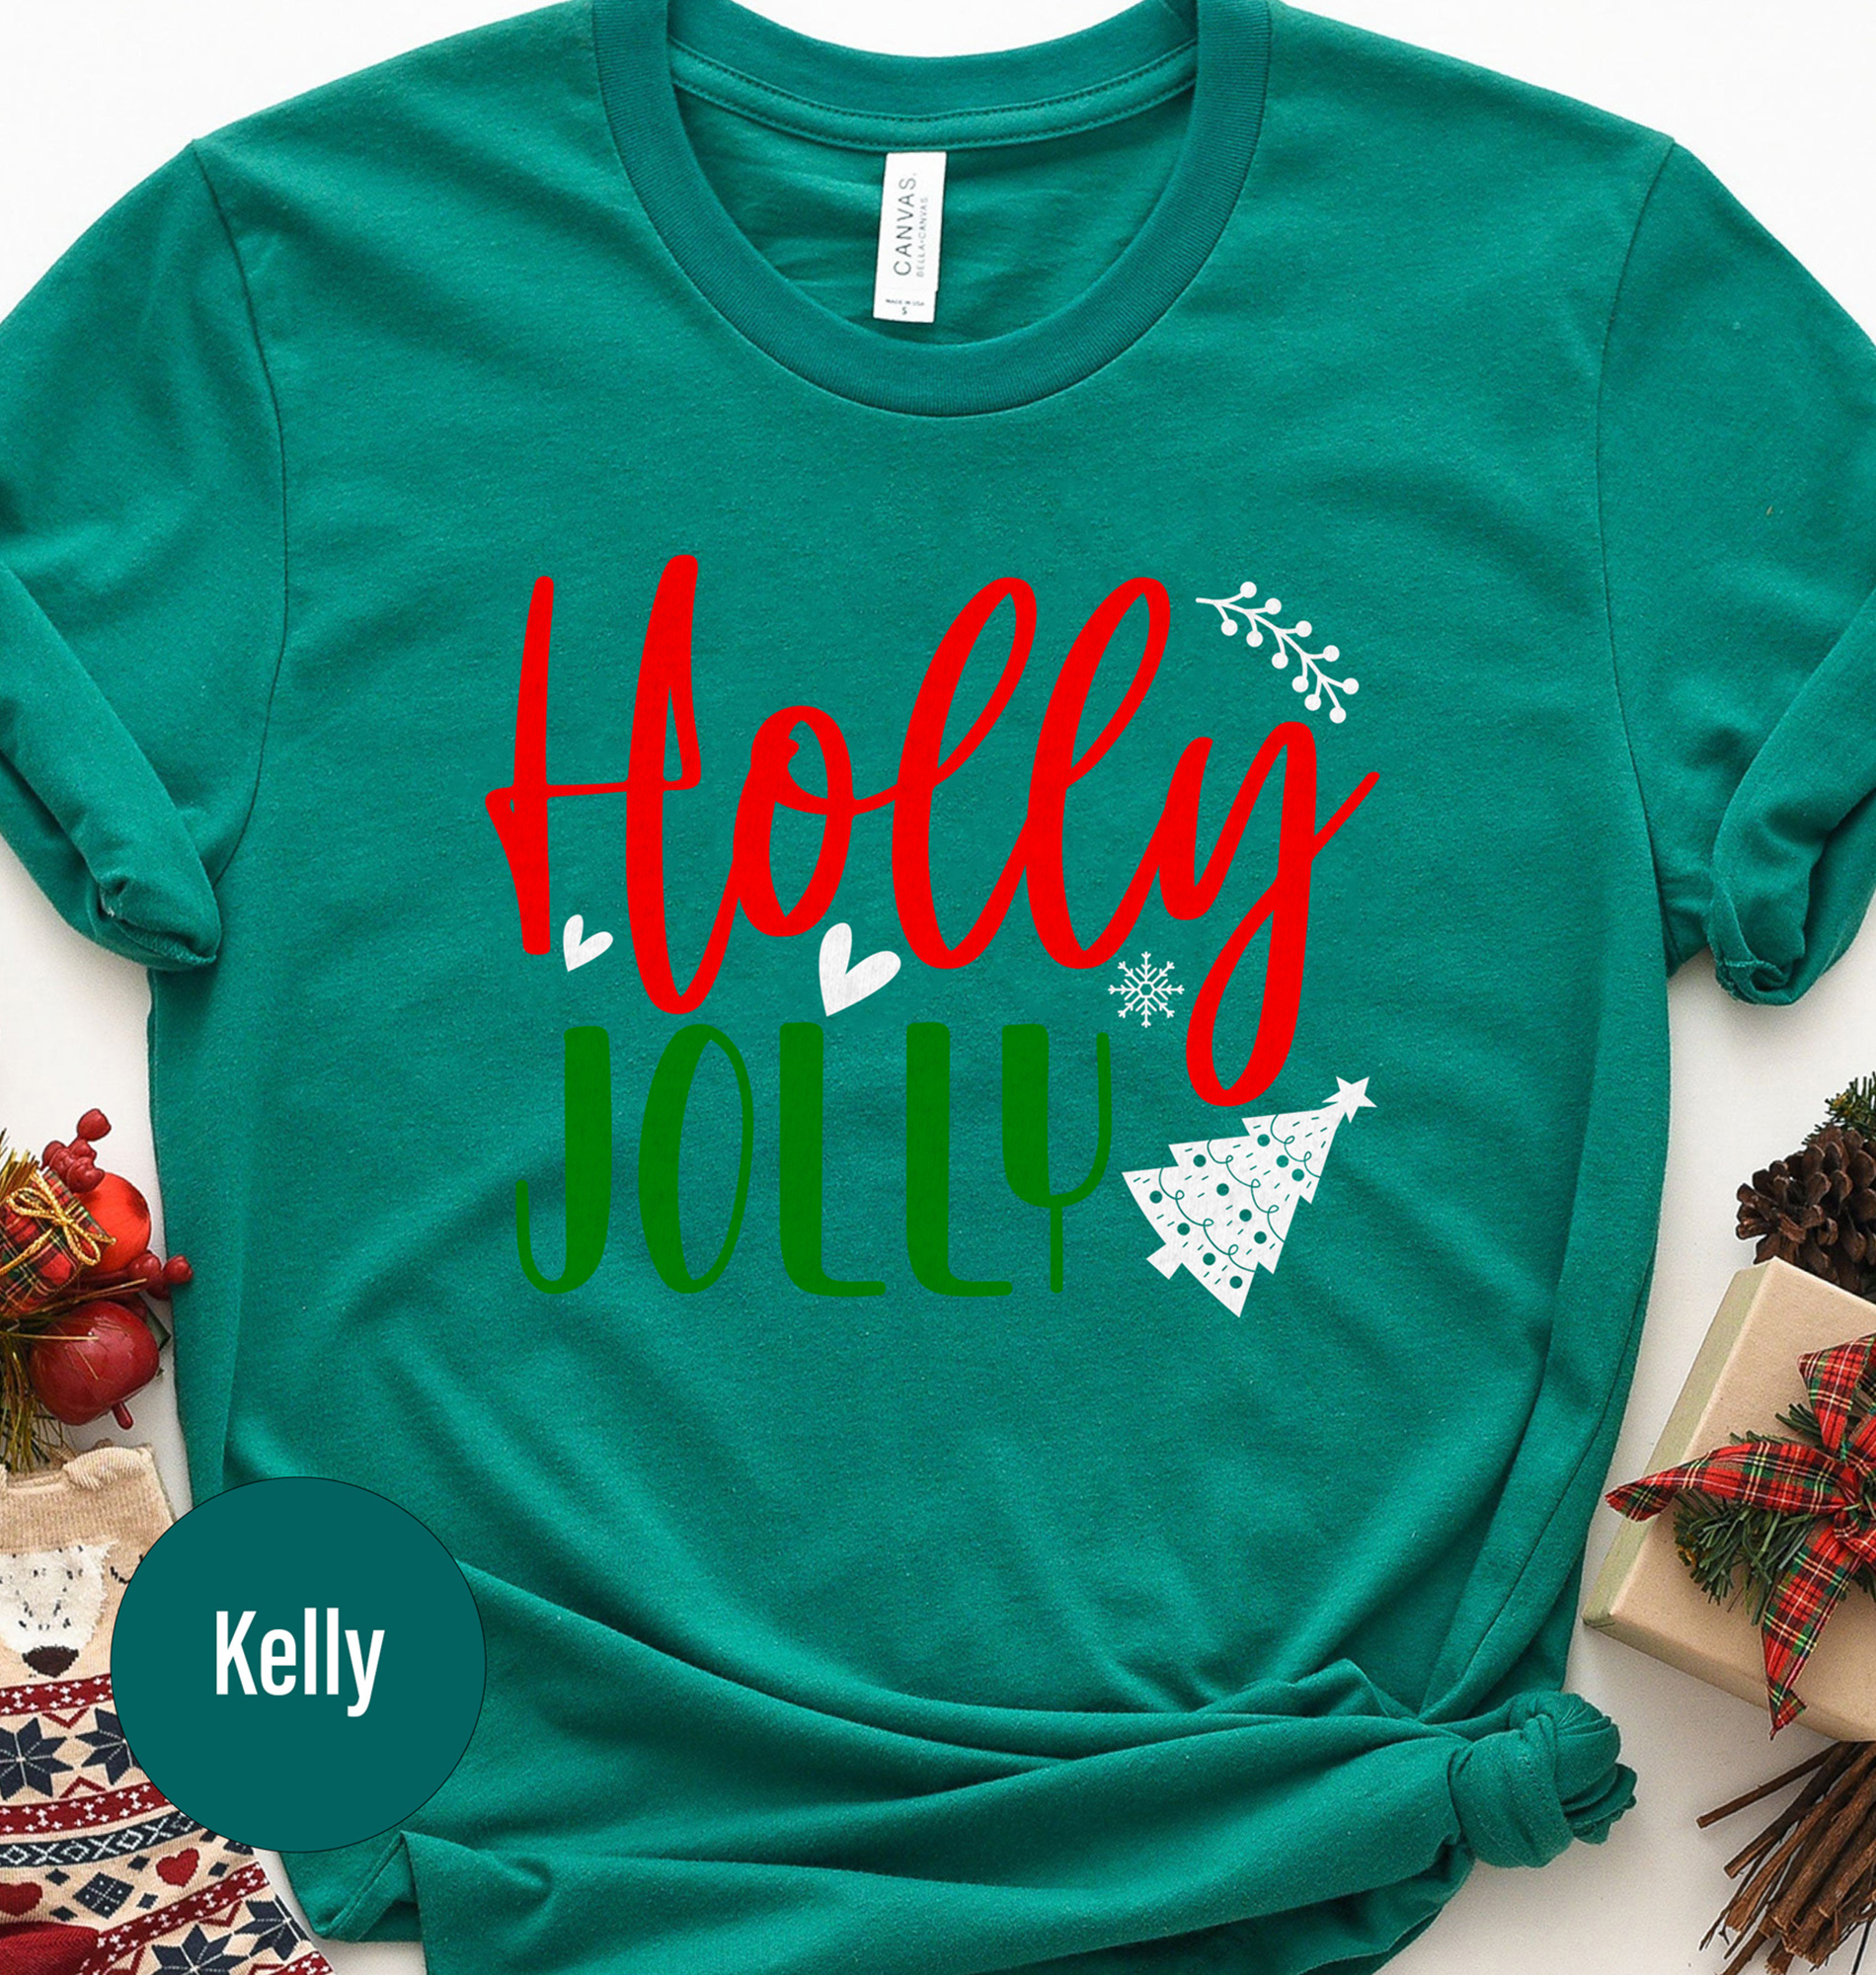 Holidayshirts.com: Holly Jolly Xmas Tee